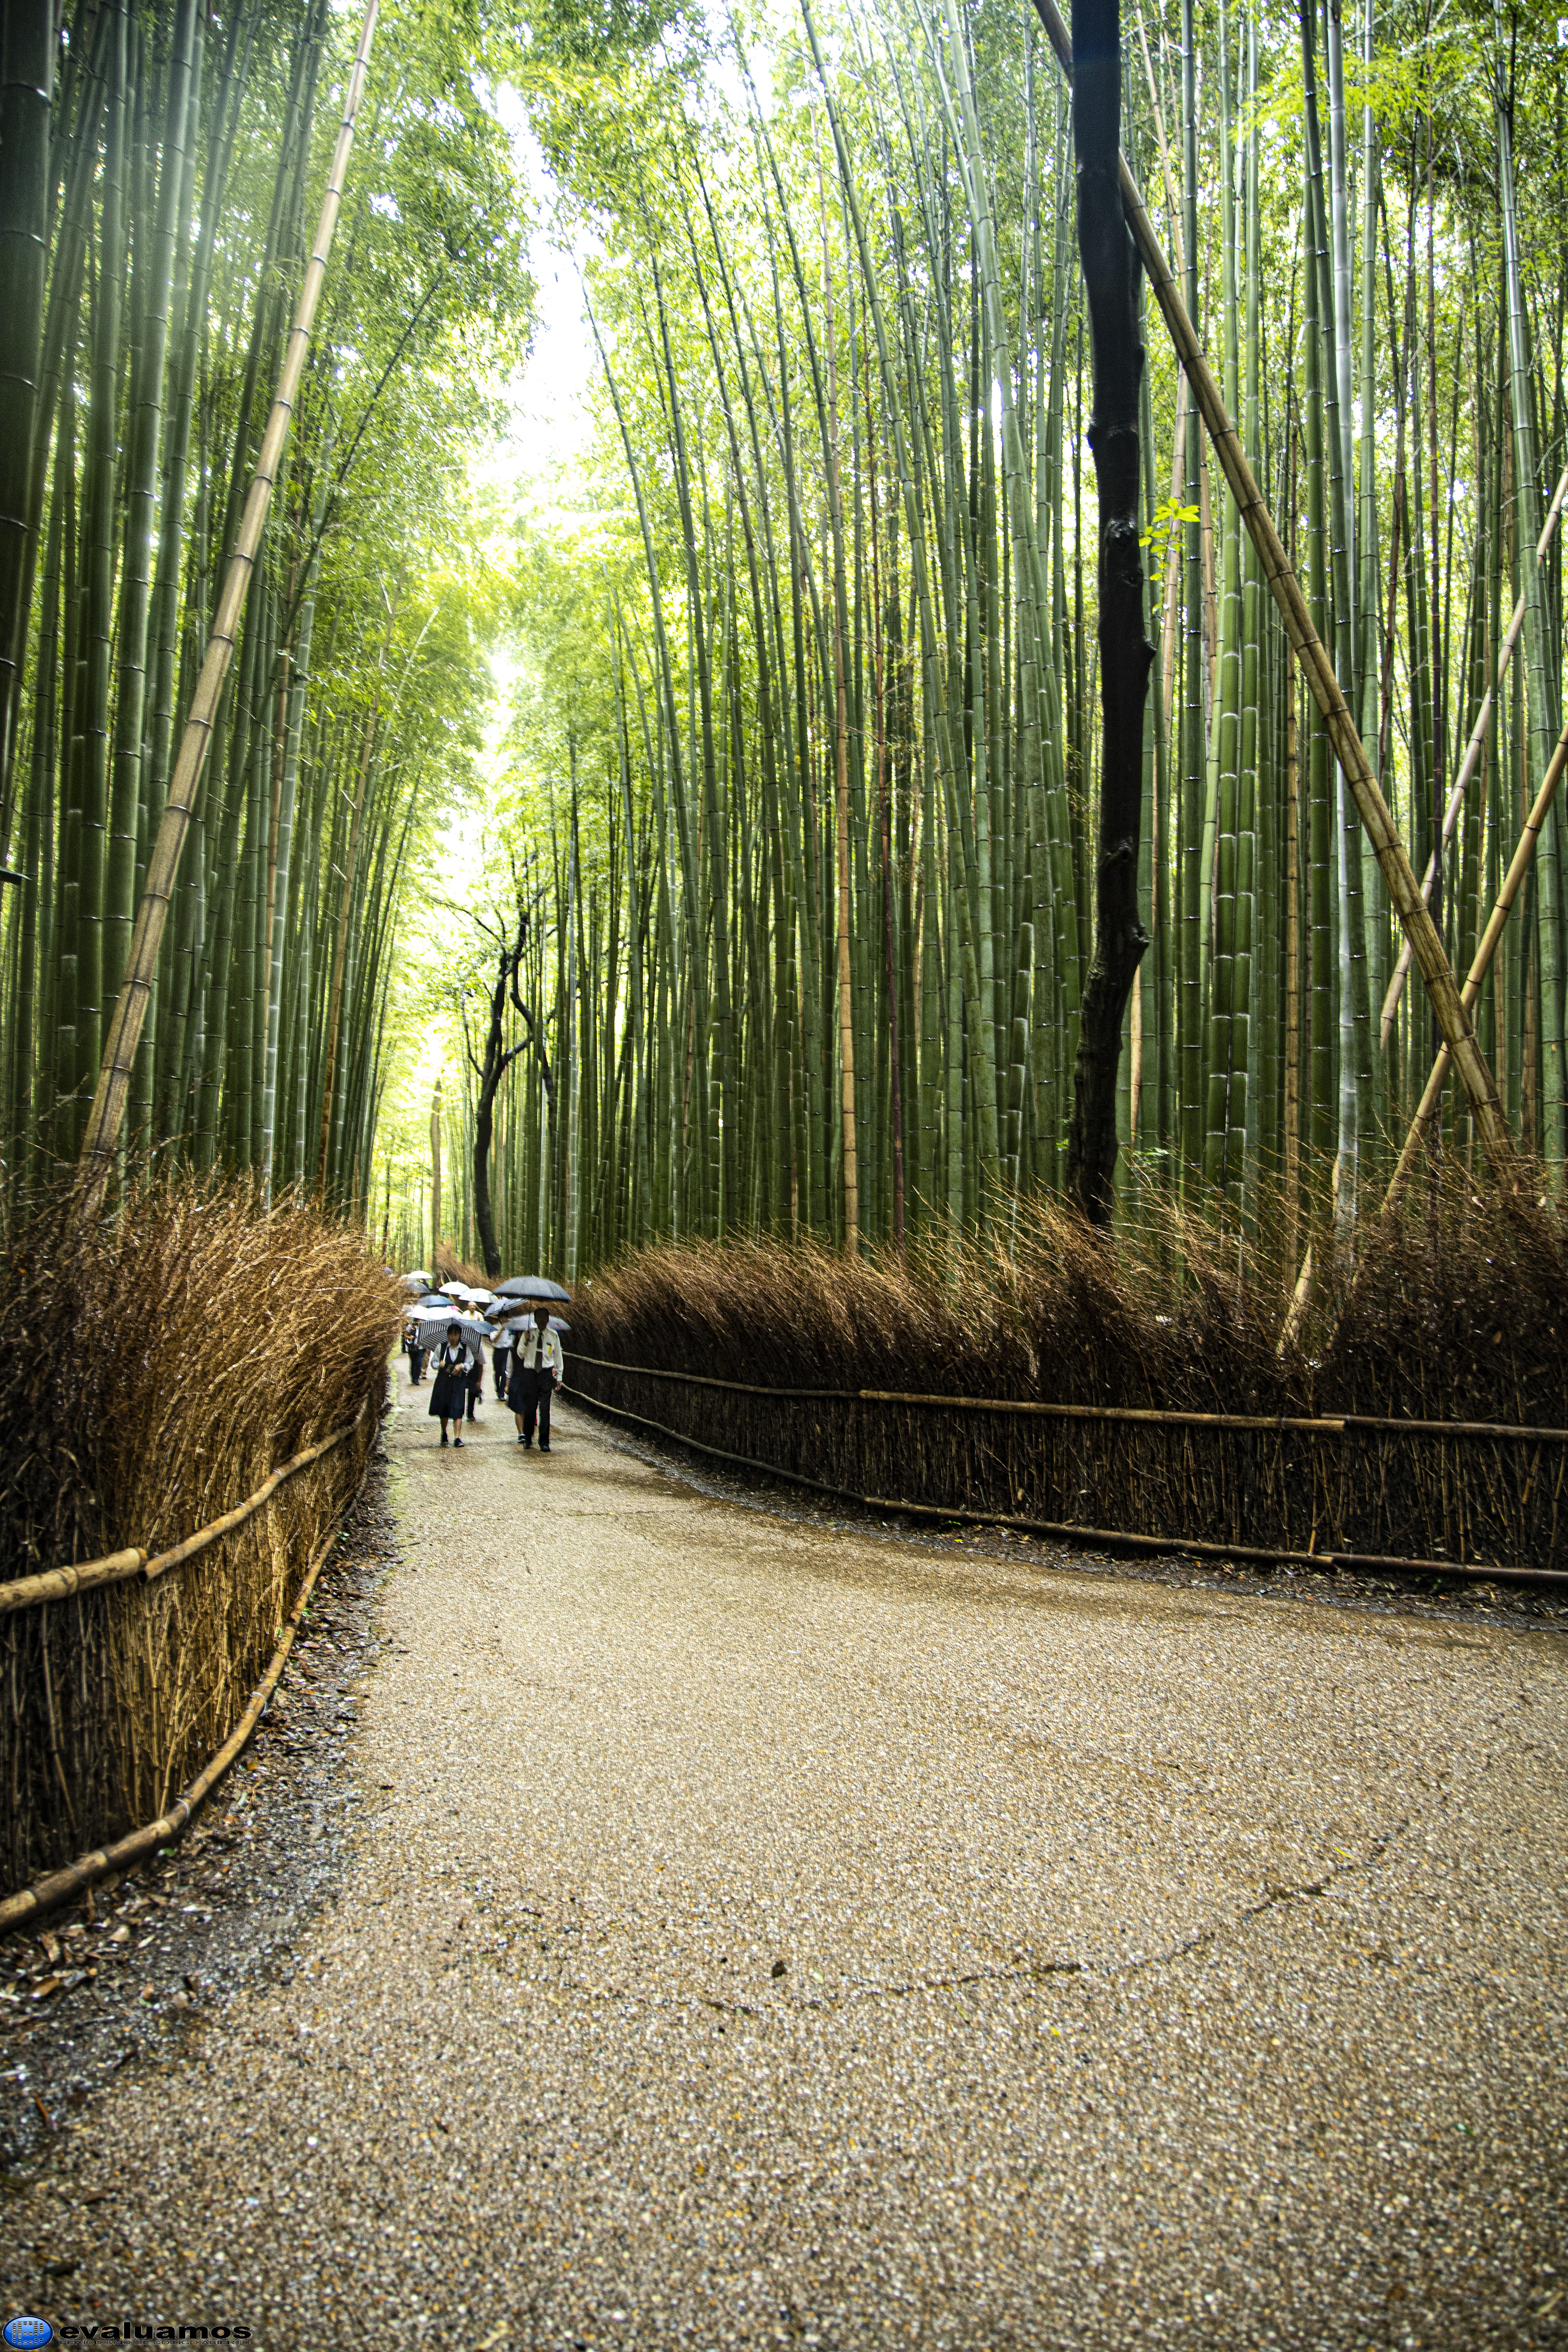 Fotografía del día – Camino túnel de bambú